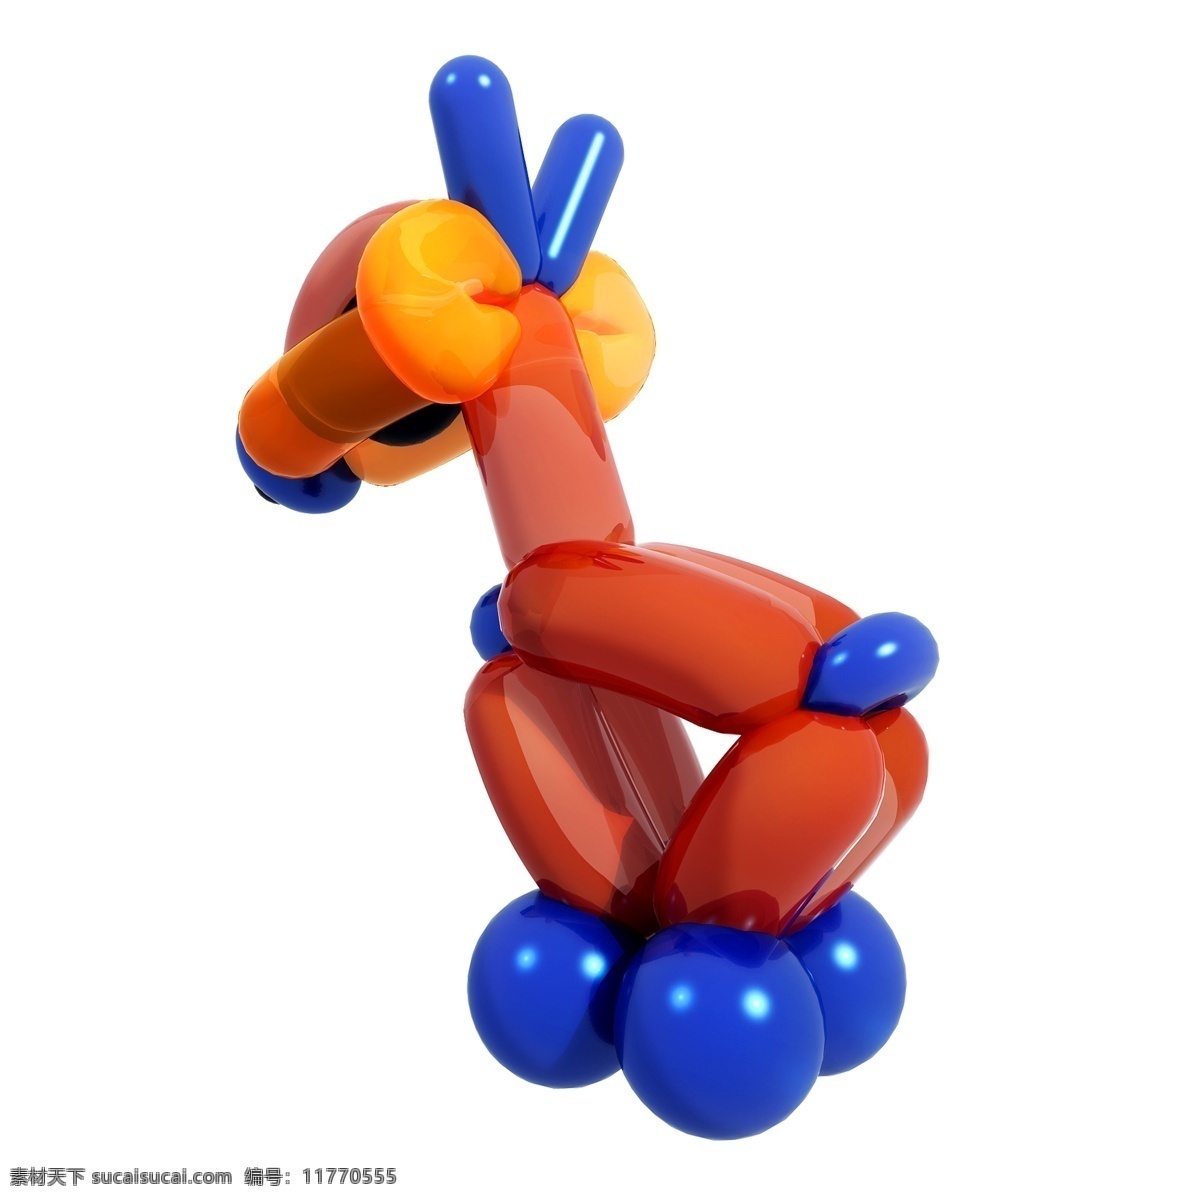 小鹿 气球 图 动物 造型 儿童节 玩具 仿真 质感 精致 套图